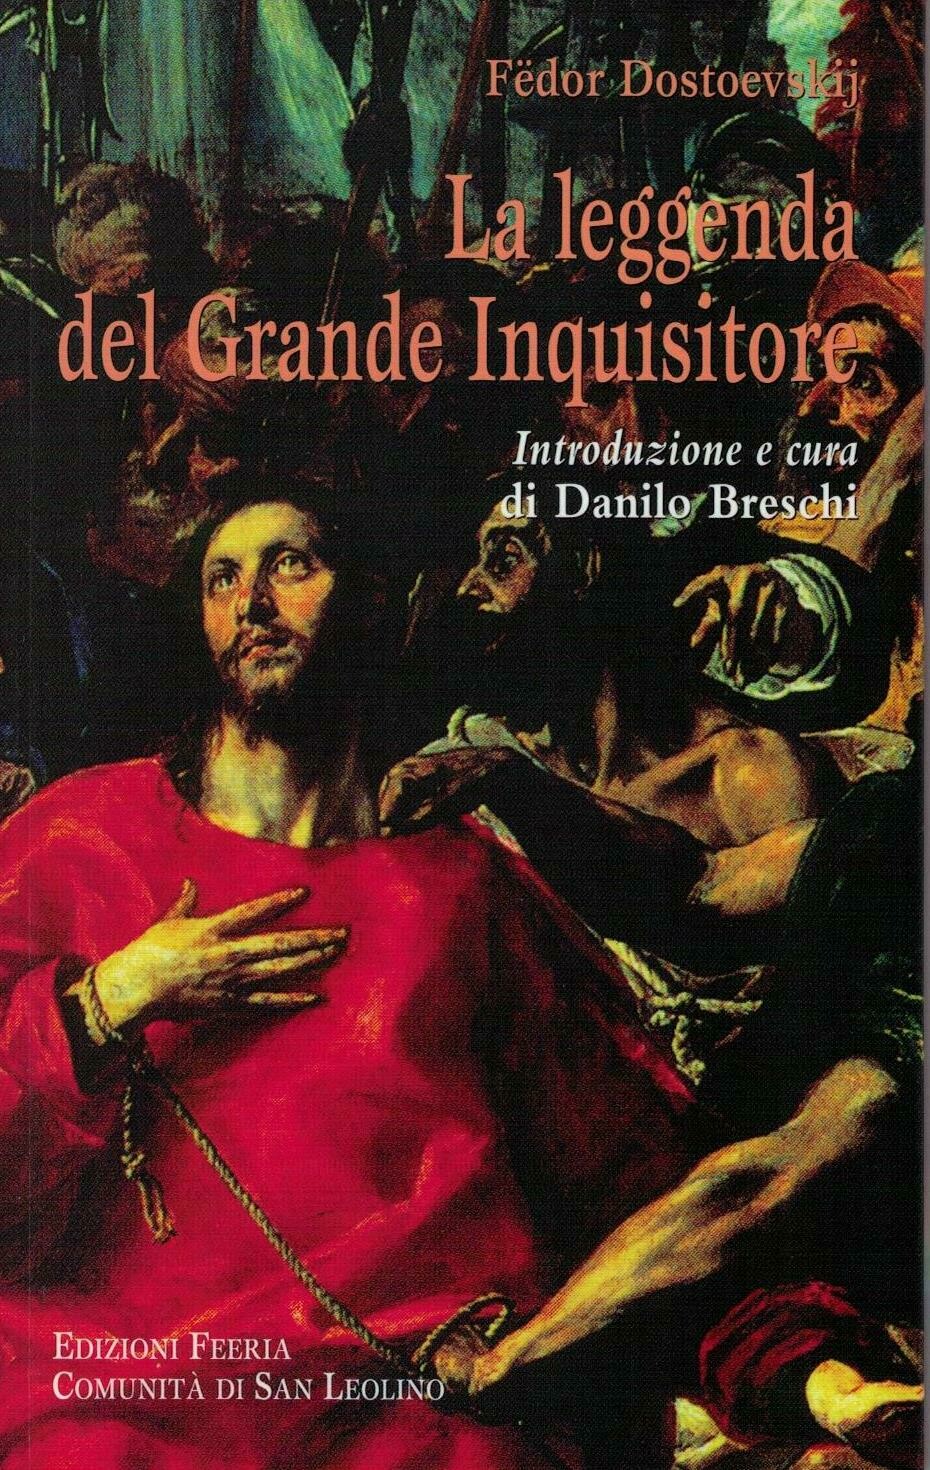 La Leggenda del Grande Inquisitore (F. Dostoevskij) - Introduzione e cura di Danilo Breschi